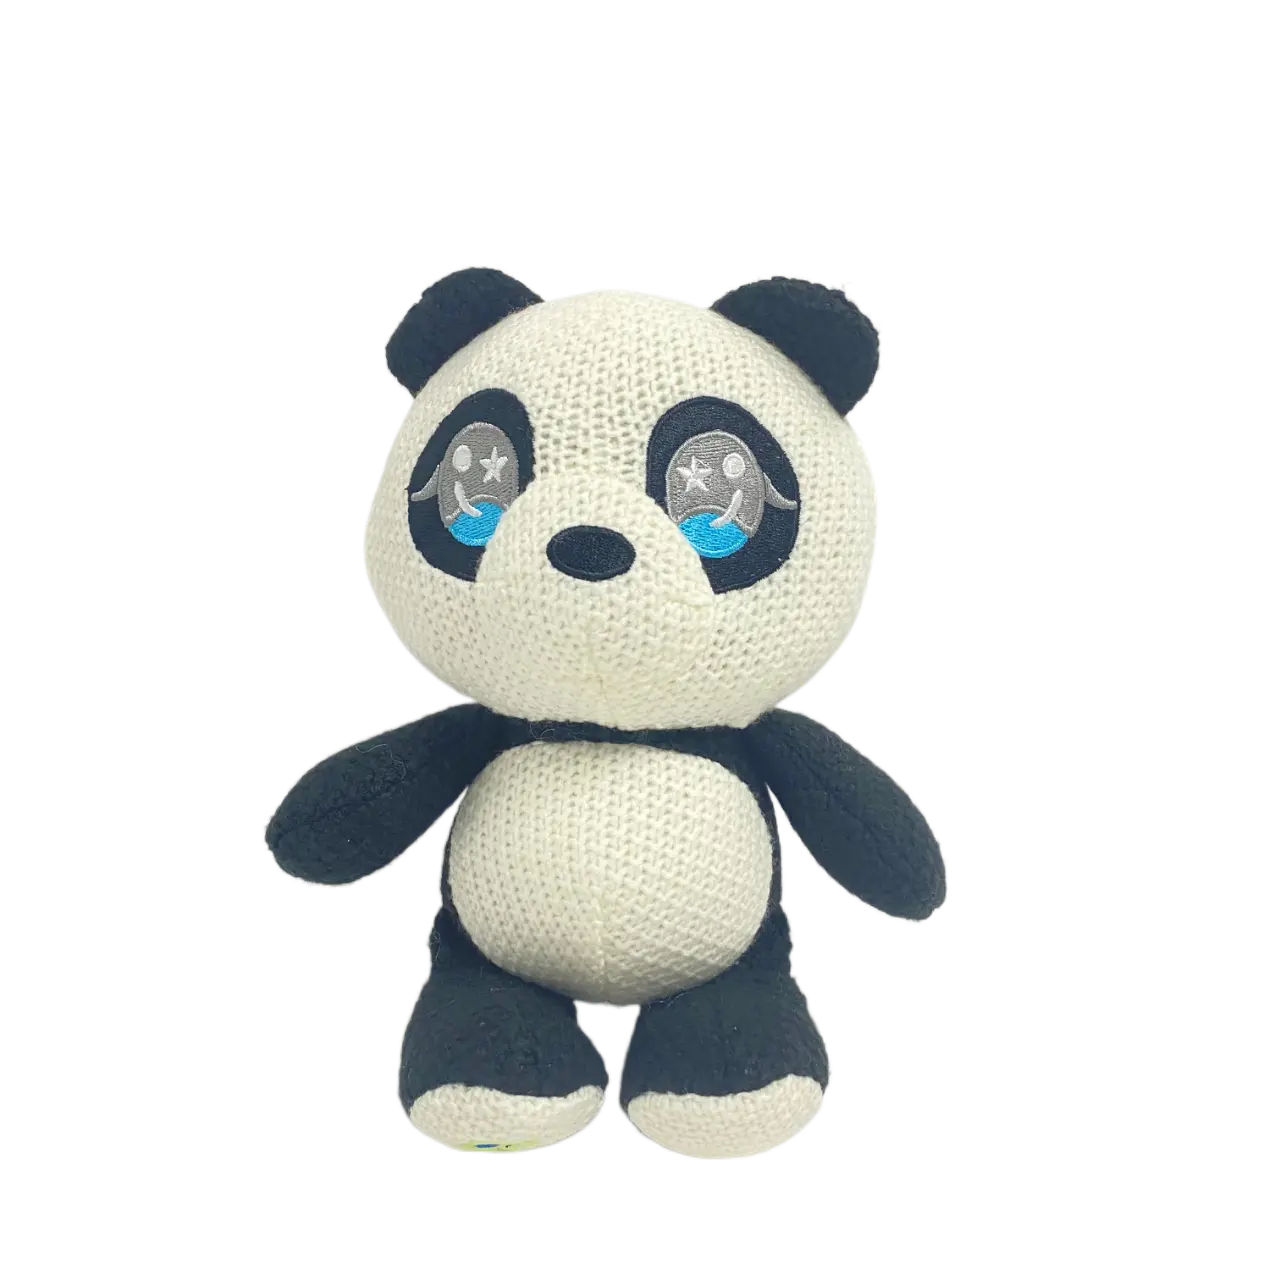 New style cute stuffed panda Stuffed combination stuffed Panda stuffed doll Stuffed animal toy for children gift